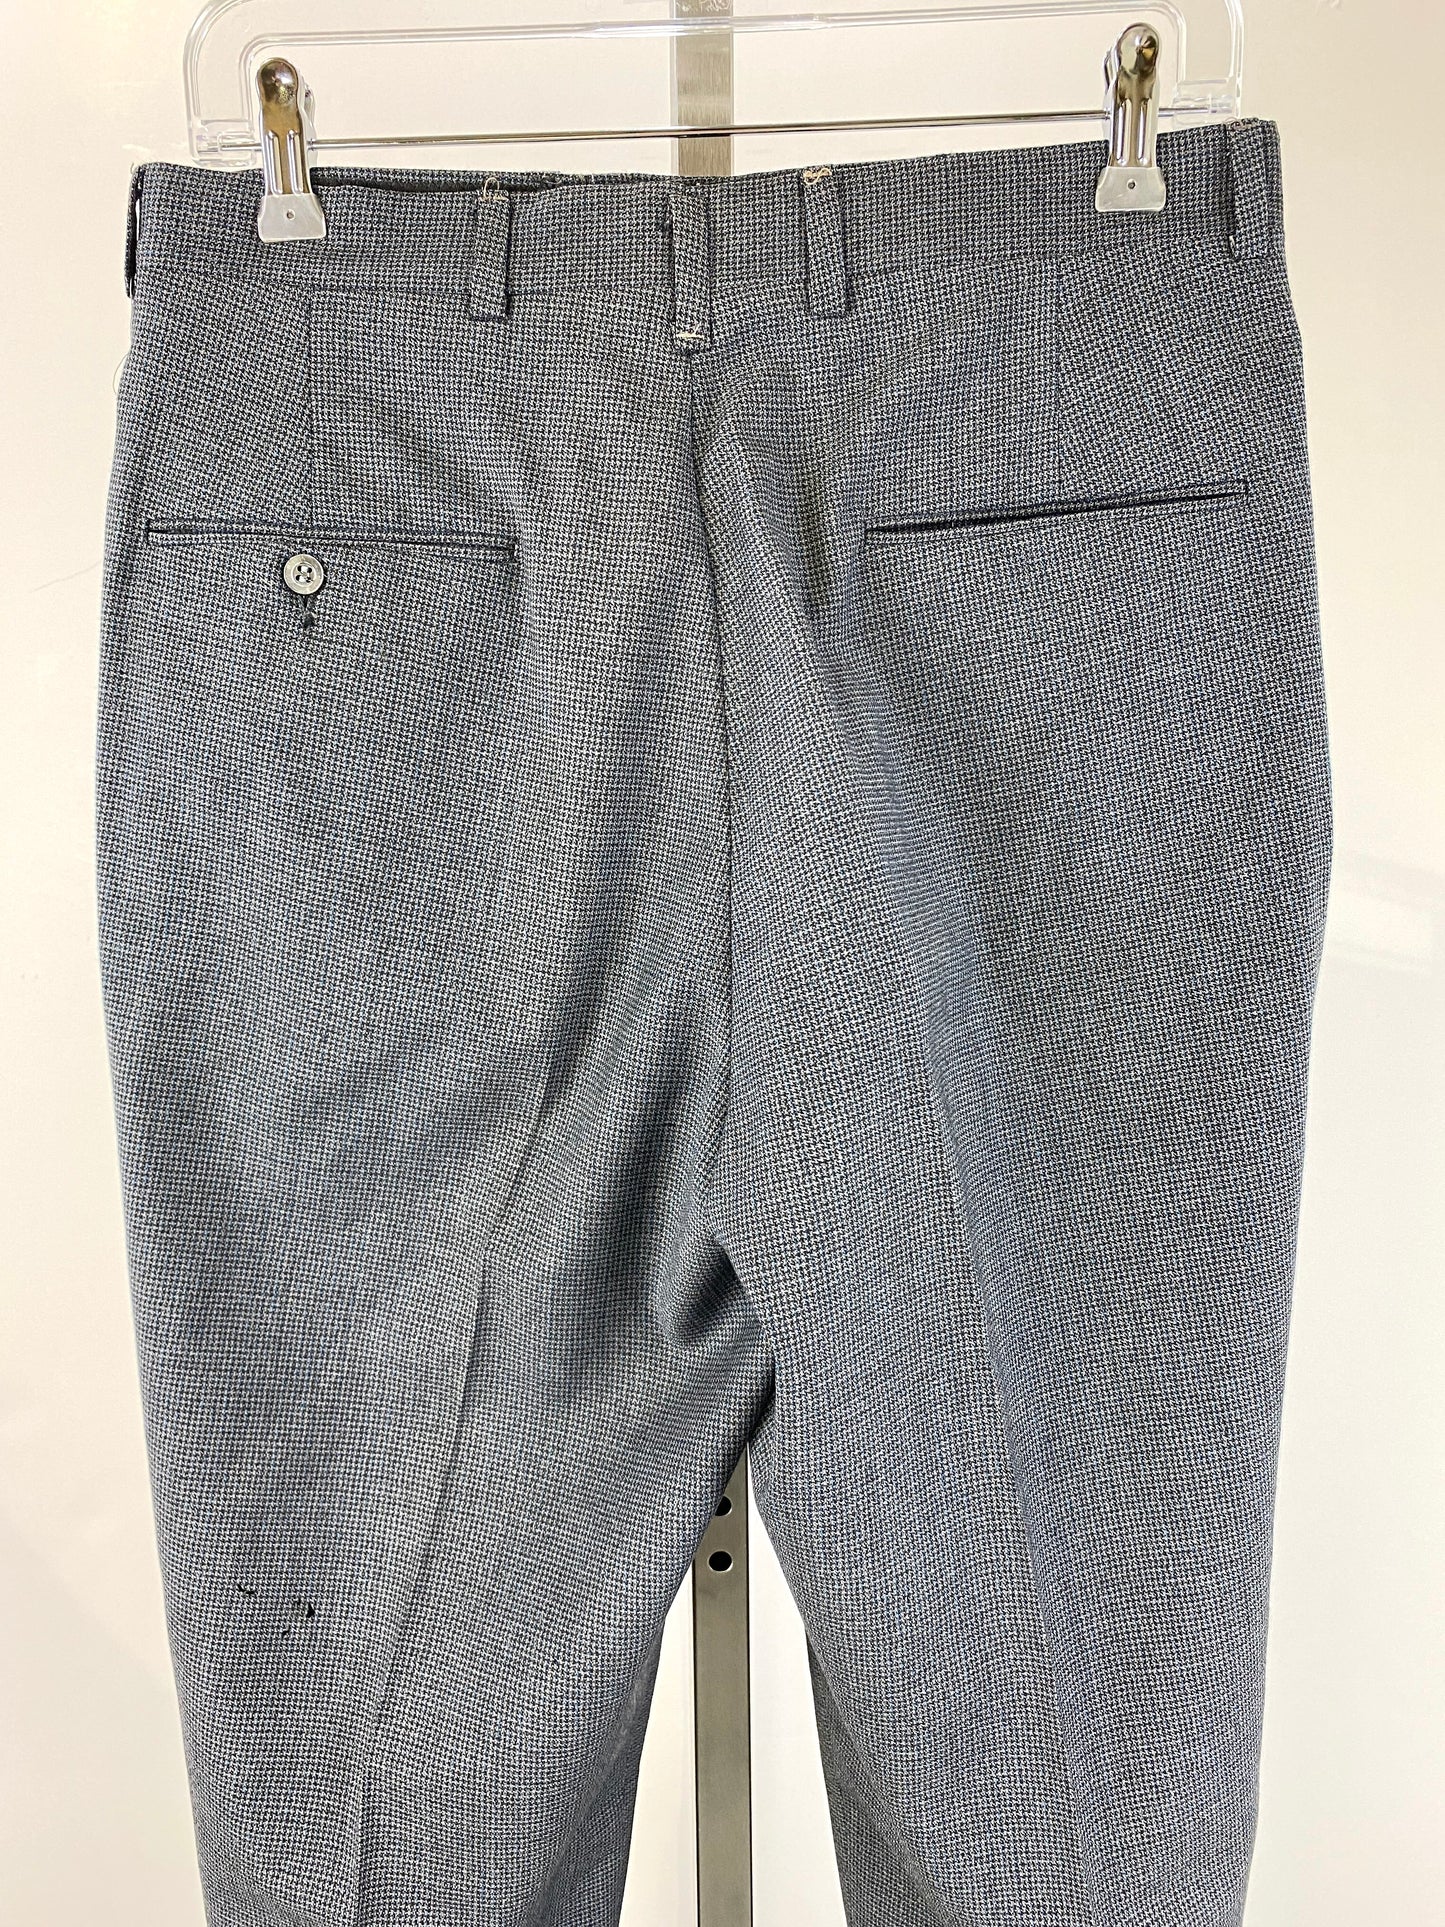 Vintage 1960s Deadstock Grey Straight-Leg Slacks, Men's Wool Check Trousers, NOS